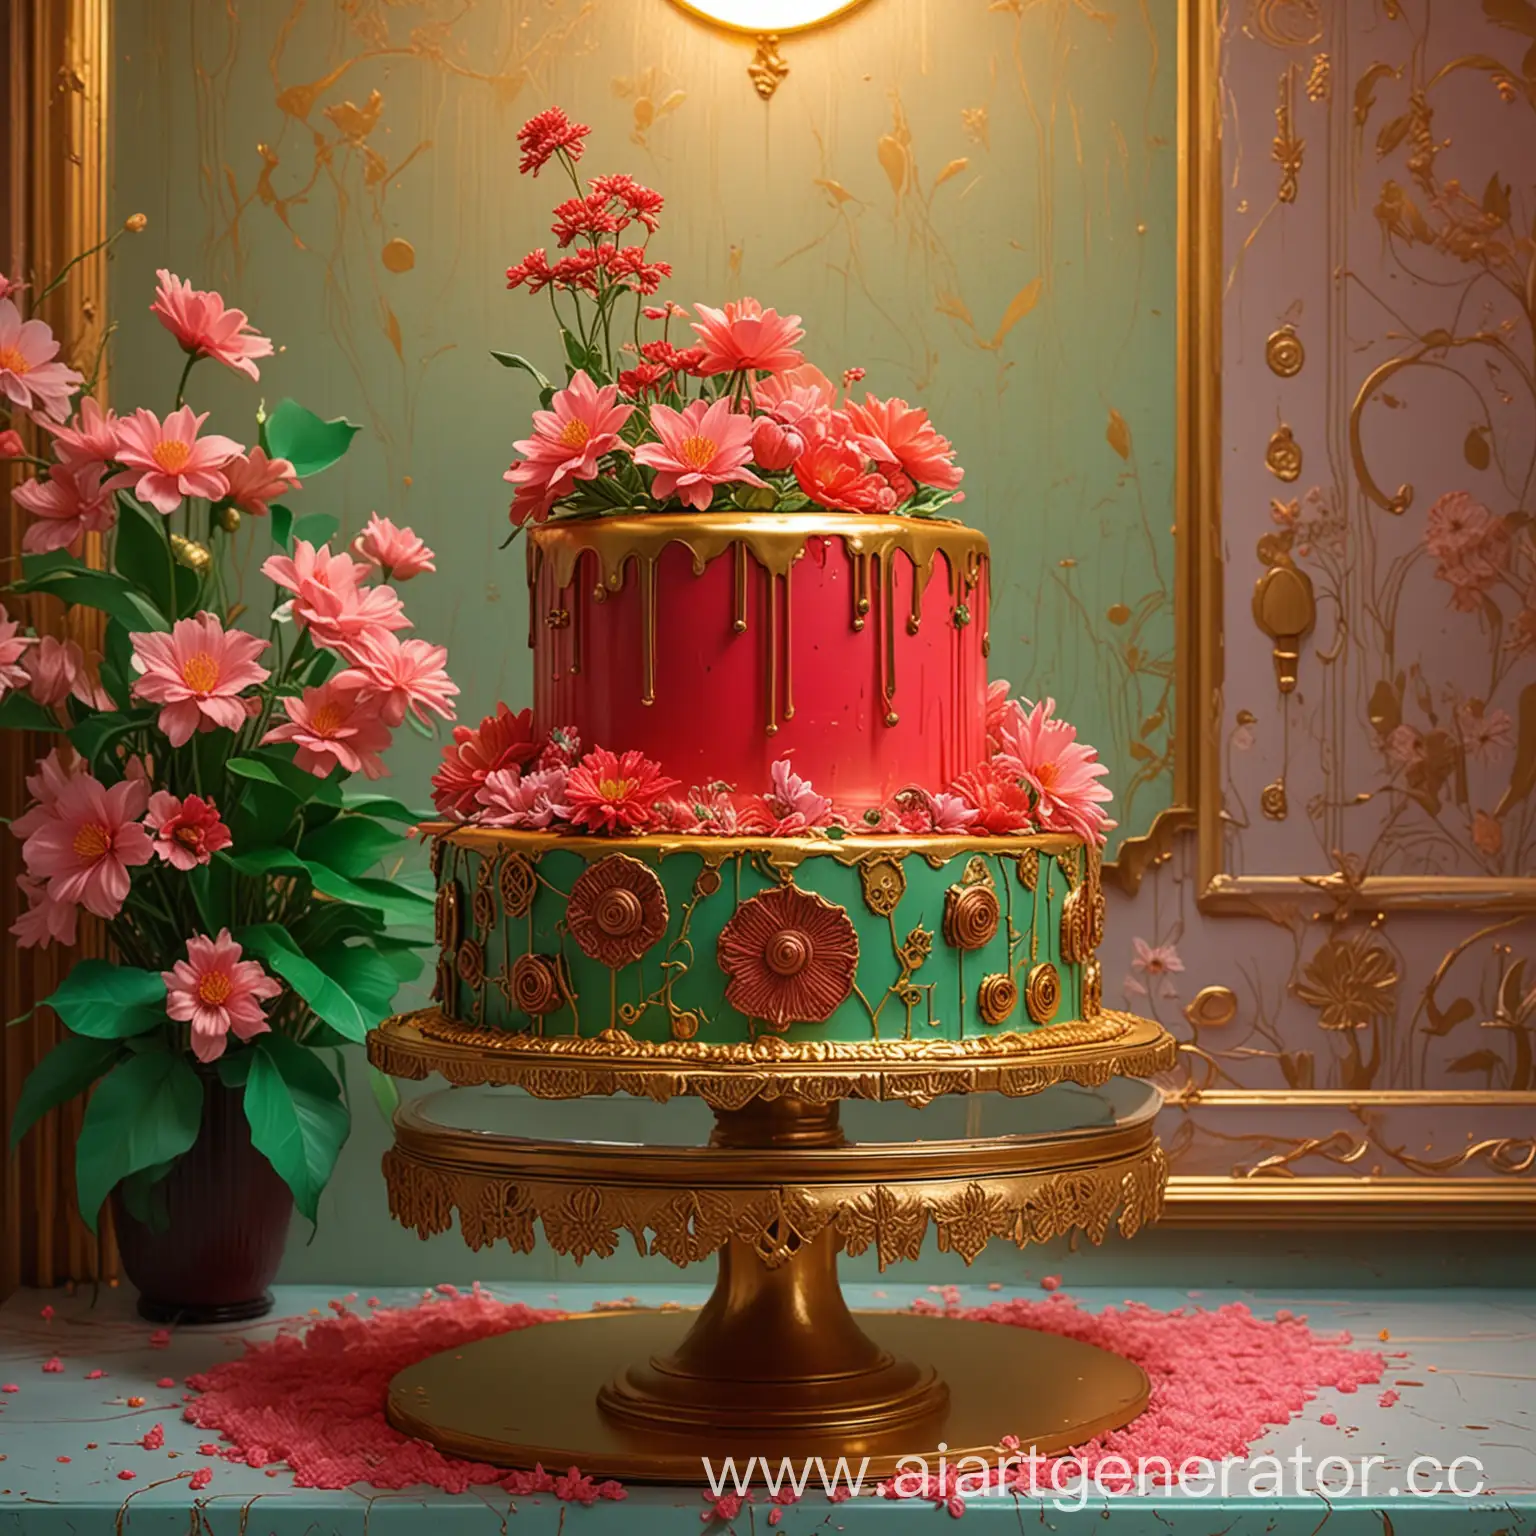 Торт с красной глазурью на золотом блюде, розовые цветы и зеленые листья на торте, стена в стиле ар деко на заднем плане, неоновый свет падает сверху и слева, изображение  в стиле стимпанка и комиксов Жана Жиро, в светлых тонах